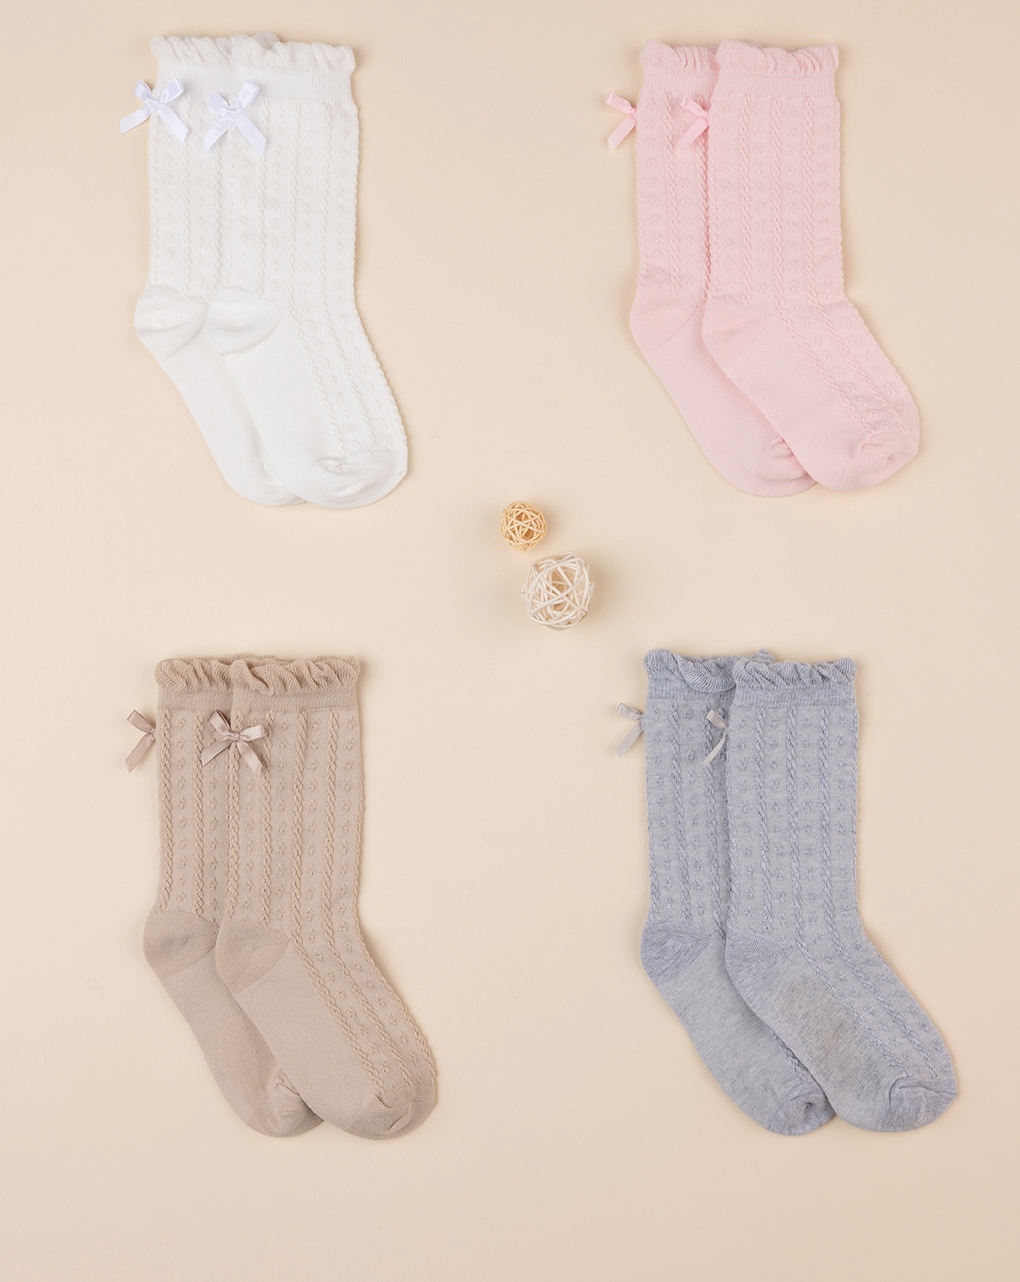 Lote de 4 calcetines de niña en varios colores - Prénatal